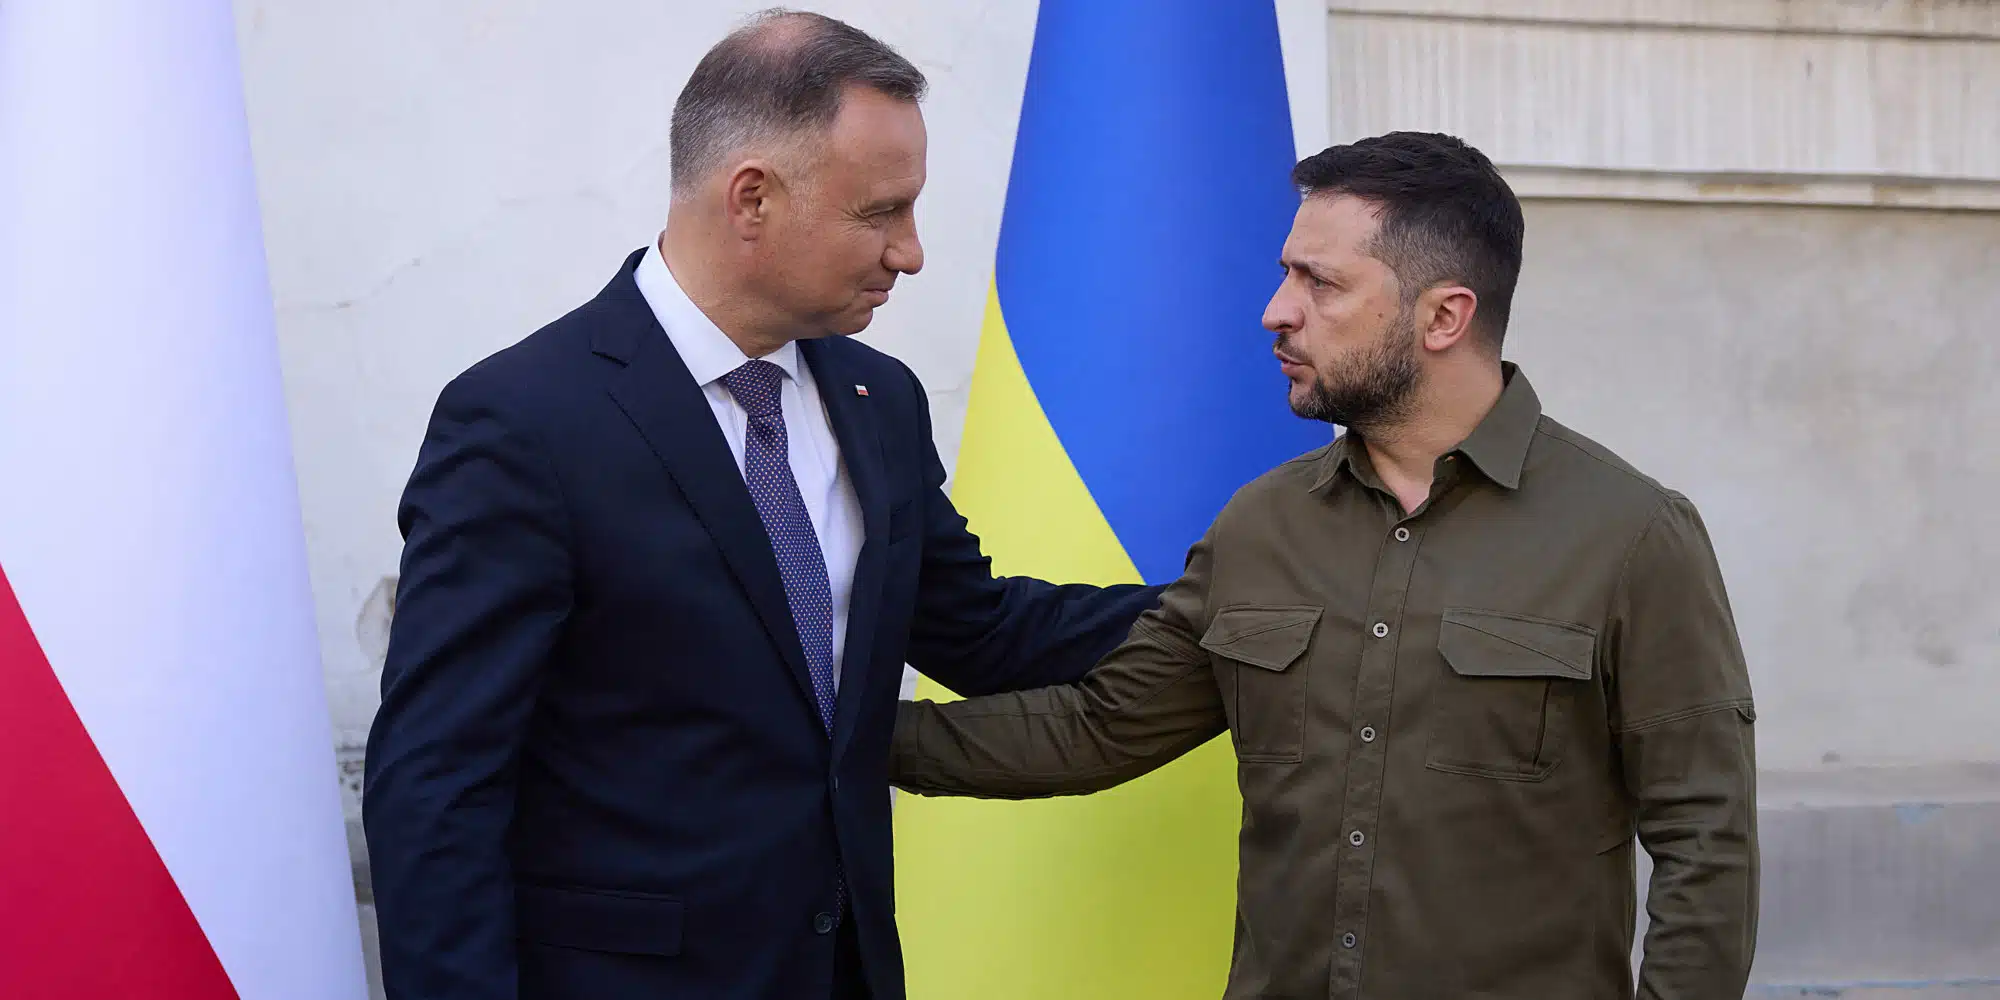 Guerre en Ukraine : la Pologne arrête ses livraisons d’armes à l’Ukraine